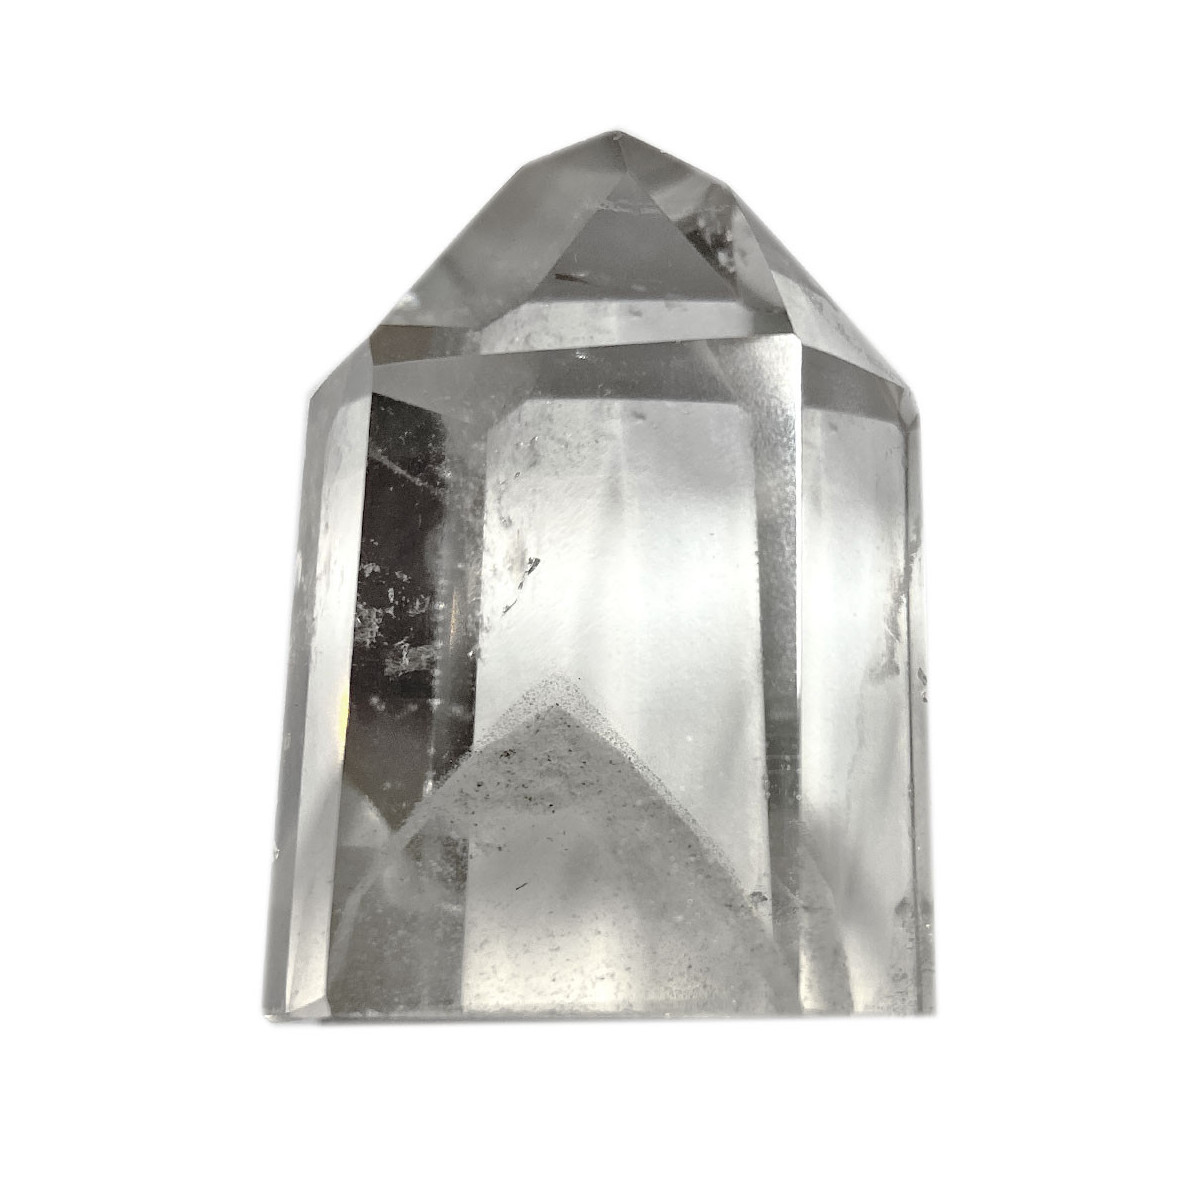 Vente de pierres de Cristal de Roche - Vibrations Cristallines (3)